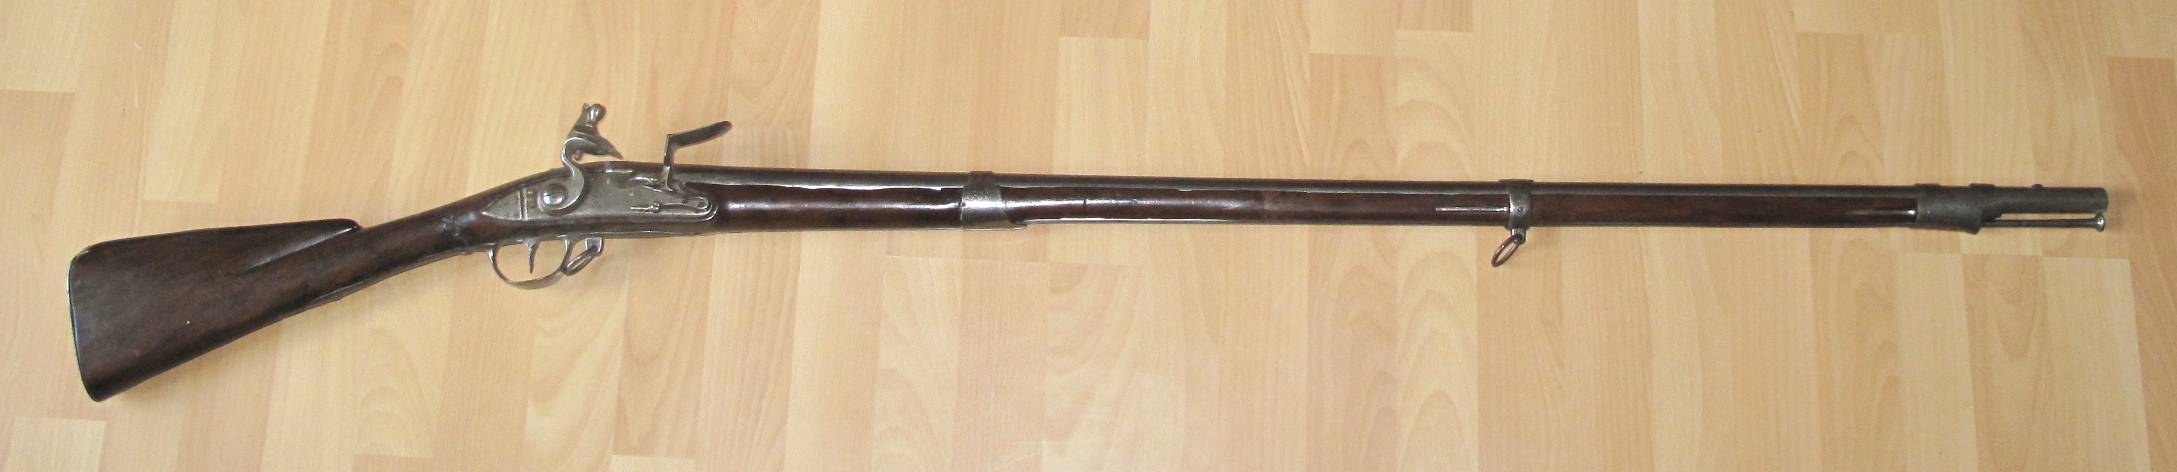 Un fusil 1728 transformé 1754 Ivke